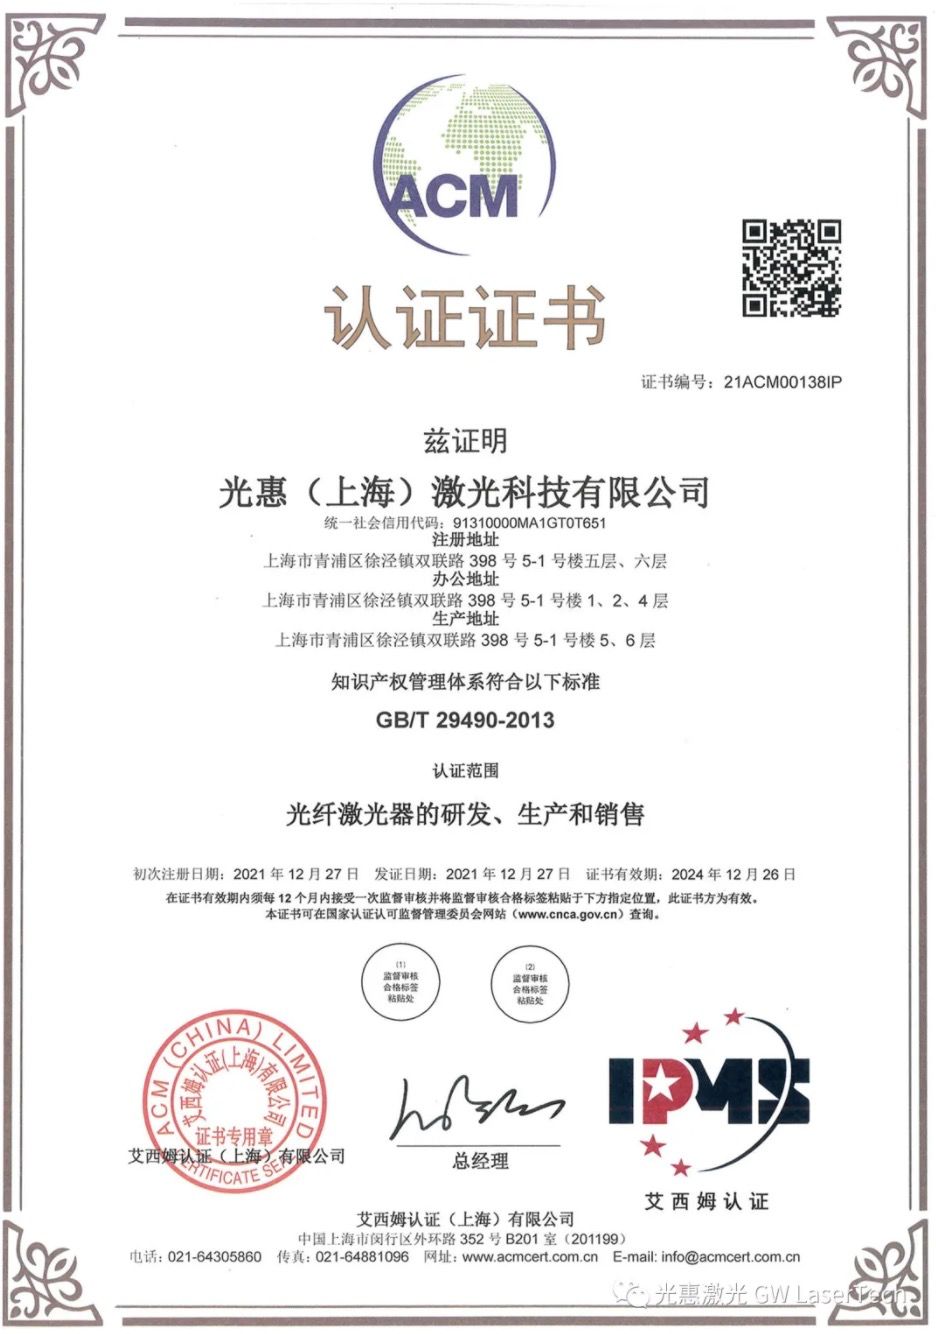 Ang GW Laser nakakuha sa intellectual property standard nga sertipikasyon